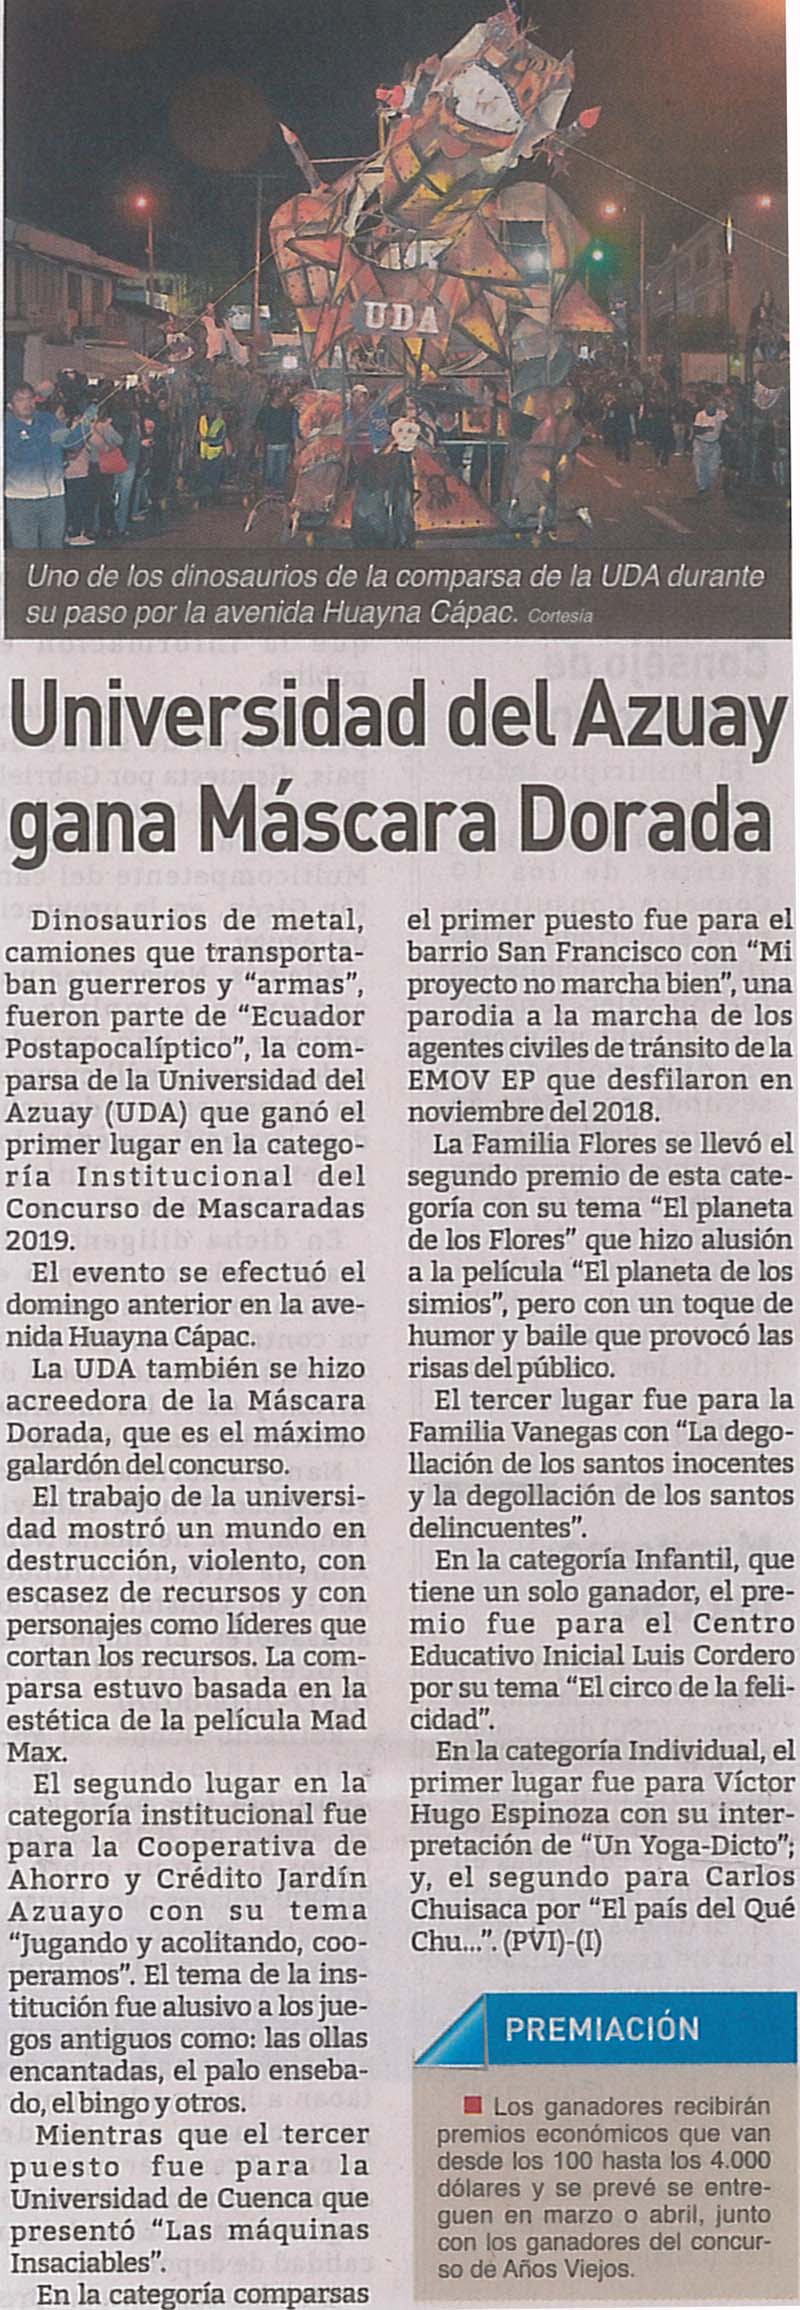 Universidad del Azuay gana Máscara Dorada 